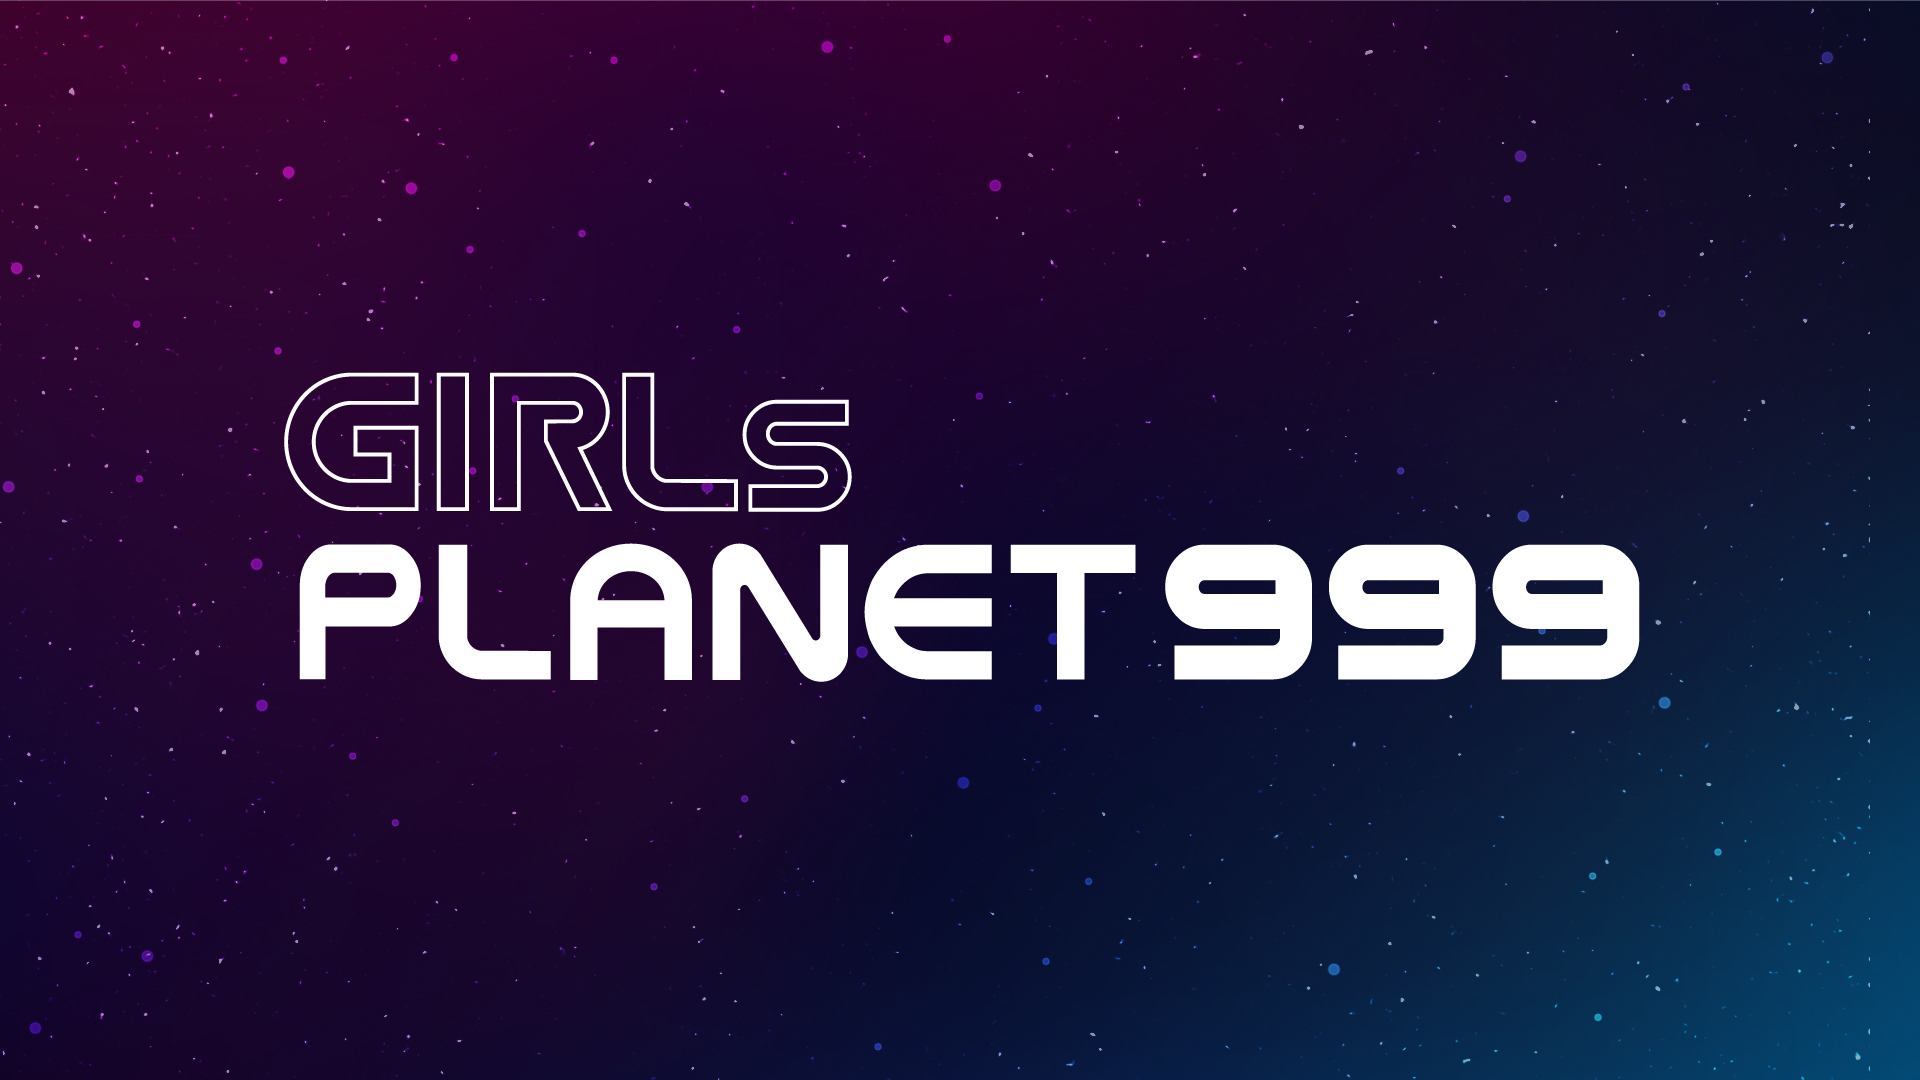 21年 Mnetの新プロジェクト グローバルガールズグループ デビュープロジェクトが始動 Girls Planet 999 志願者募集開始 Mnetのプレスリリース